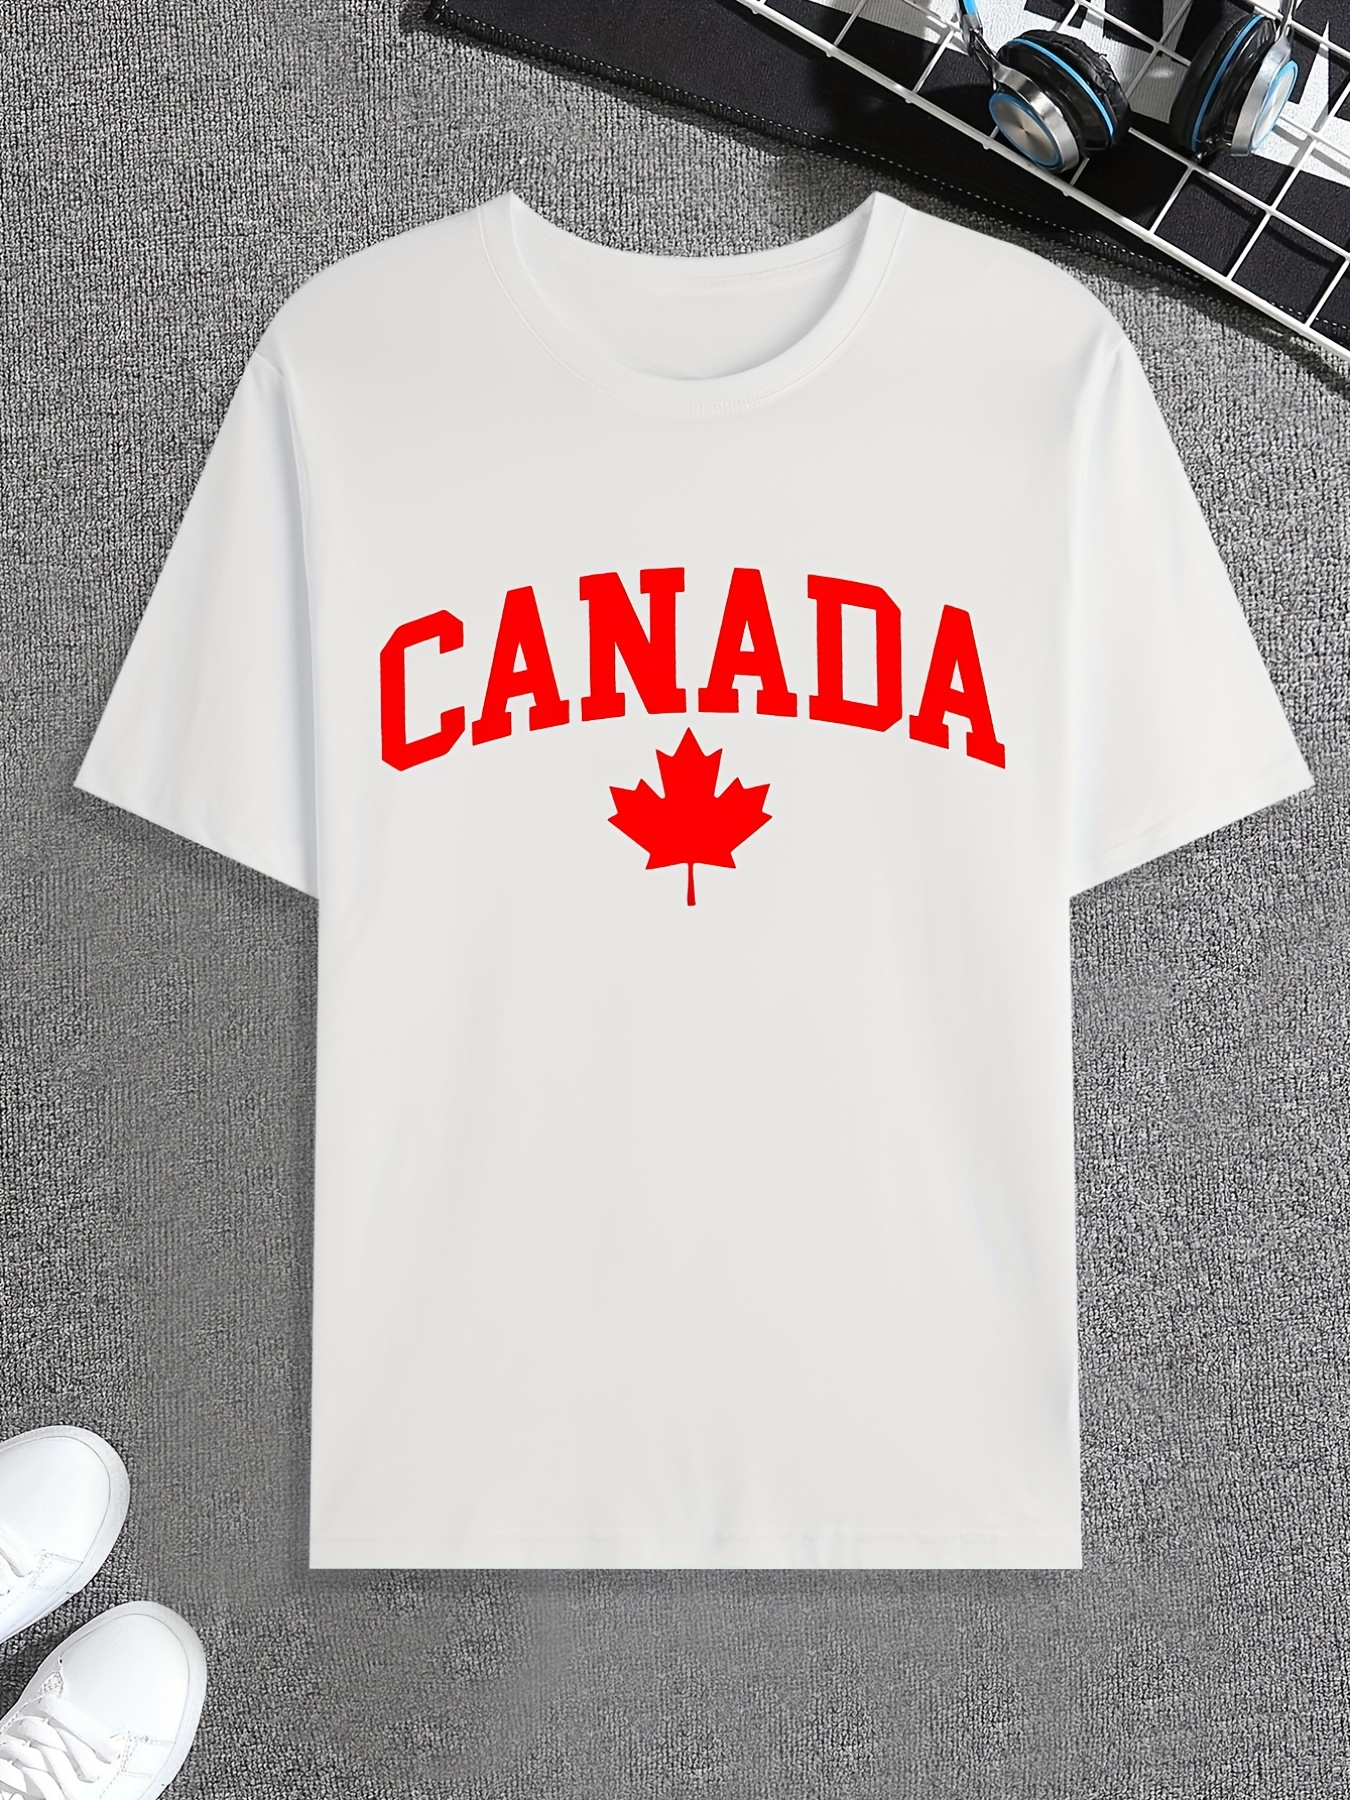 Kanada Hemd Von Innerhalb Germany - 90 Temu Tagen Kostenlose - Rückgabe